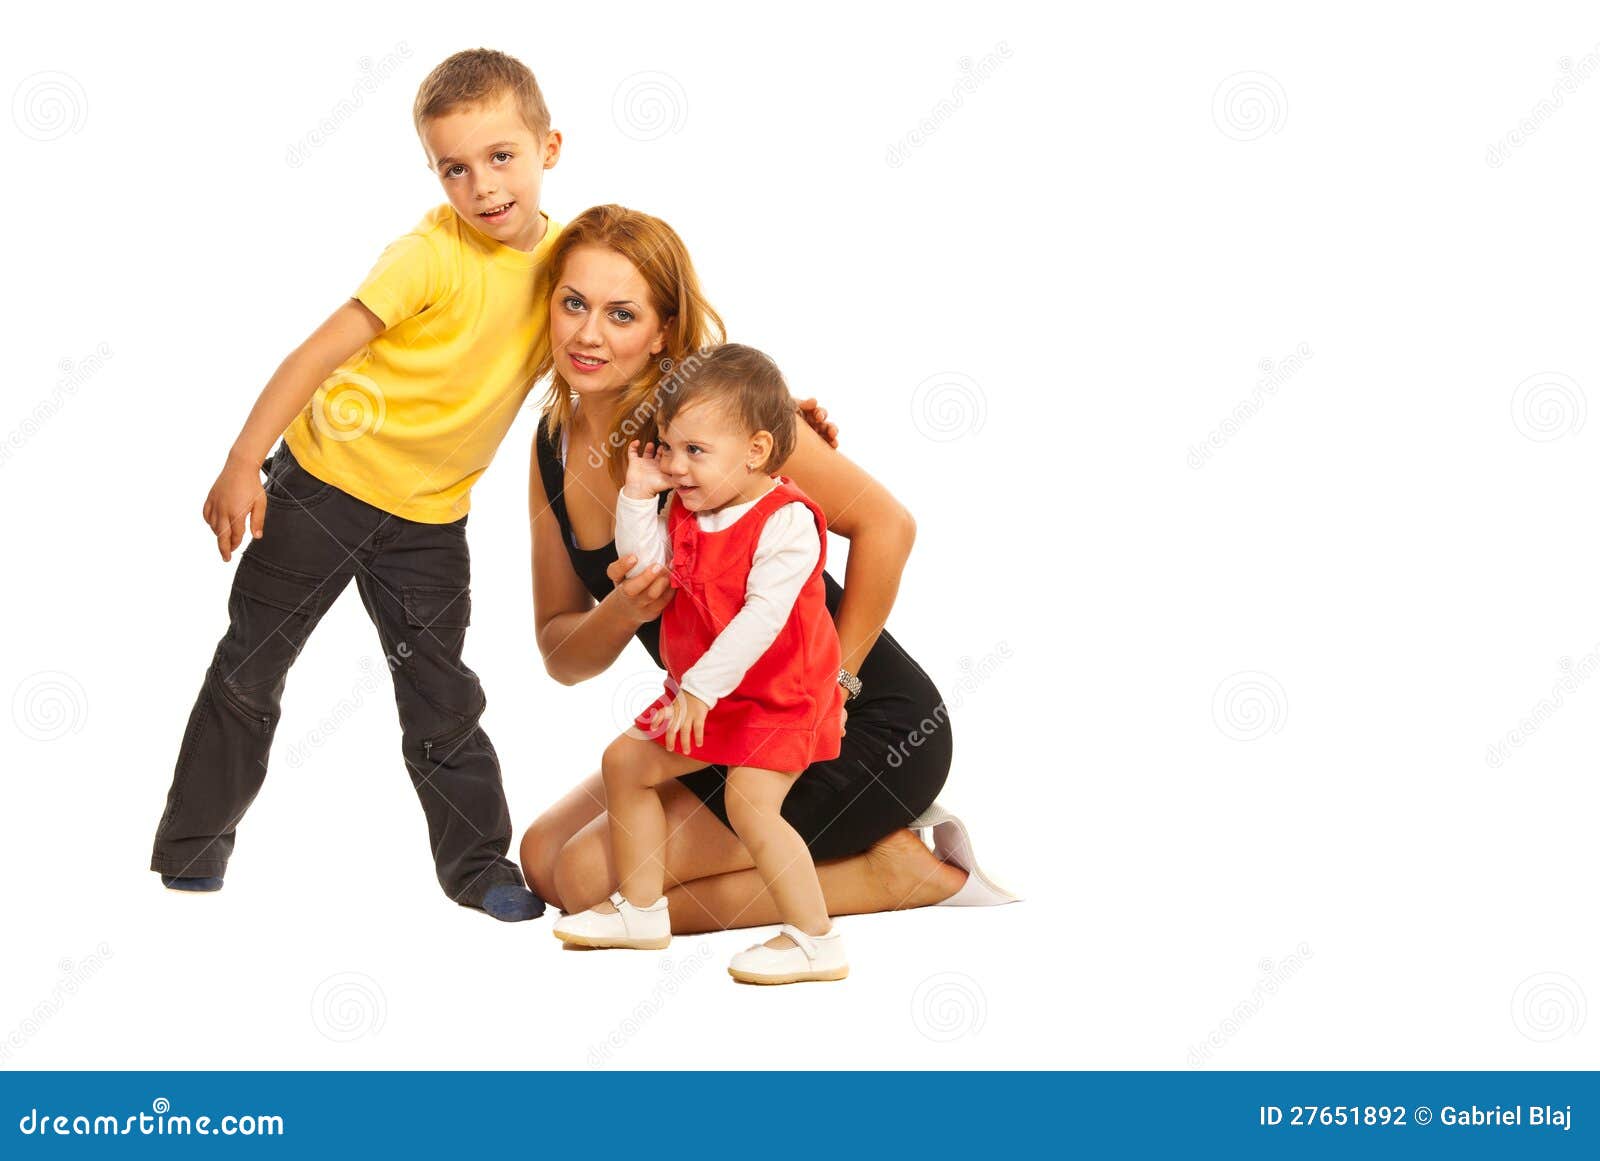 Τοποθέτηση μητέρων με δύο κατσίκια. Ευτυχής συνεδρίαση μητέρων στο πάτωμα και αγκάλιασμα του γιου και της κόρης της που απομονώνονται στην άσπρη ανασκόπηση